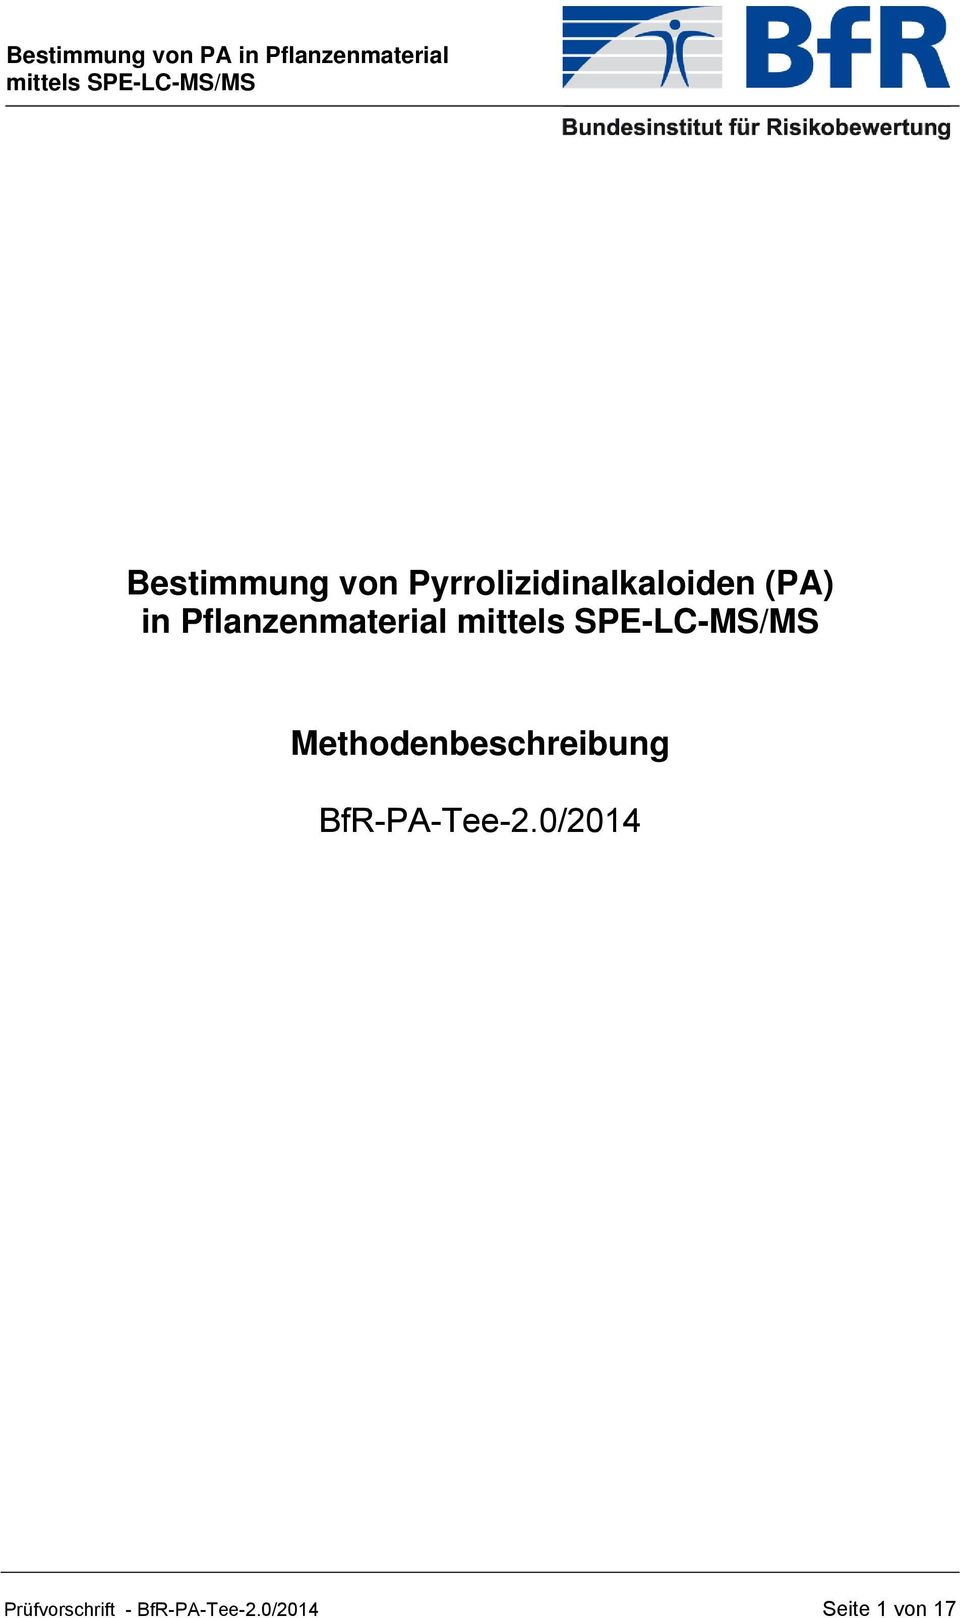 Methodenbeschreibung BfR-PA-Tee-2.